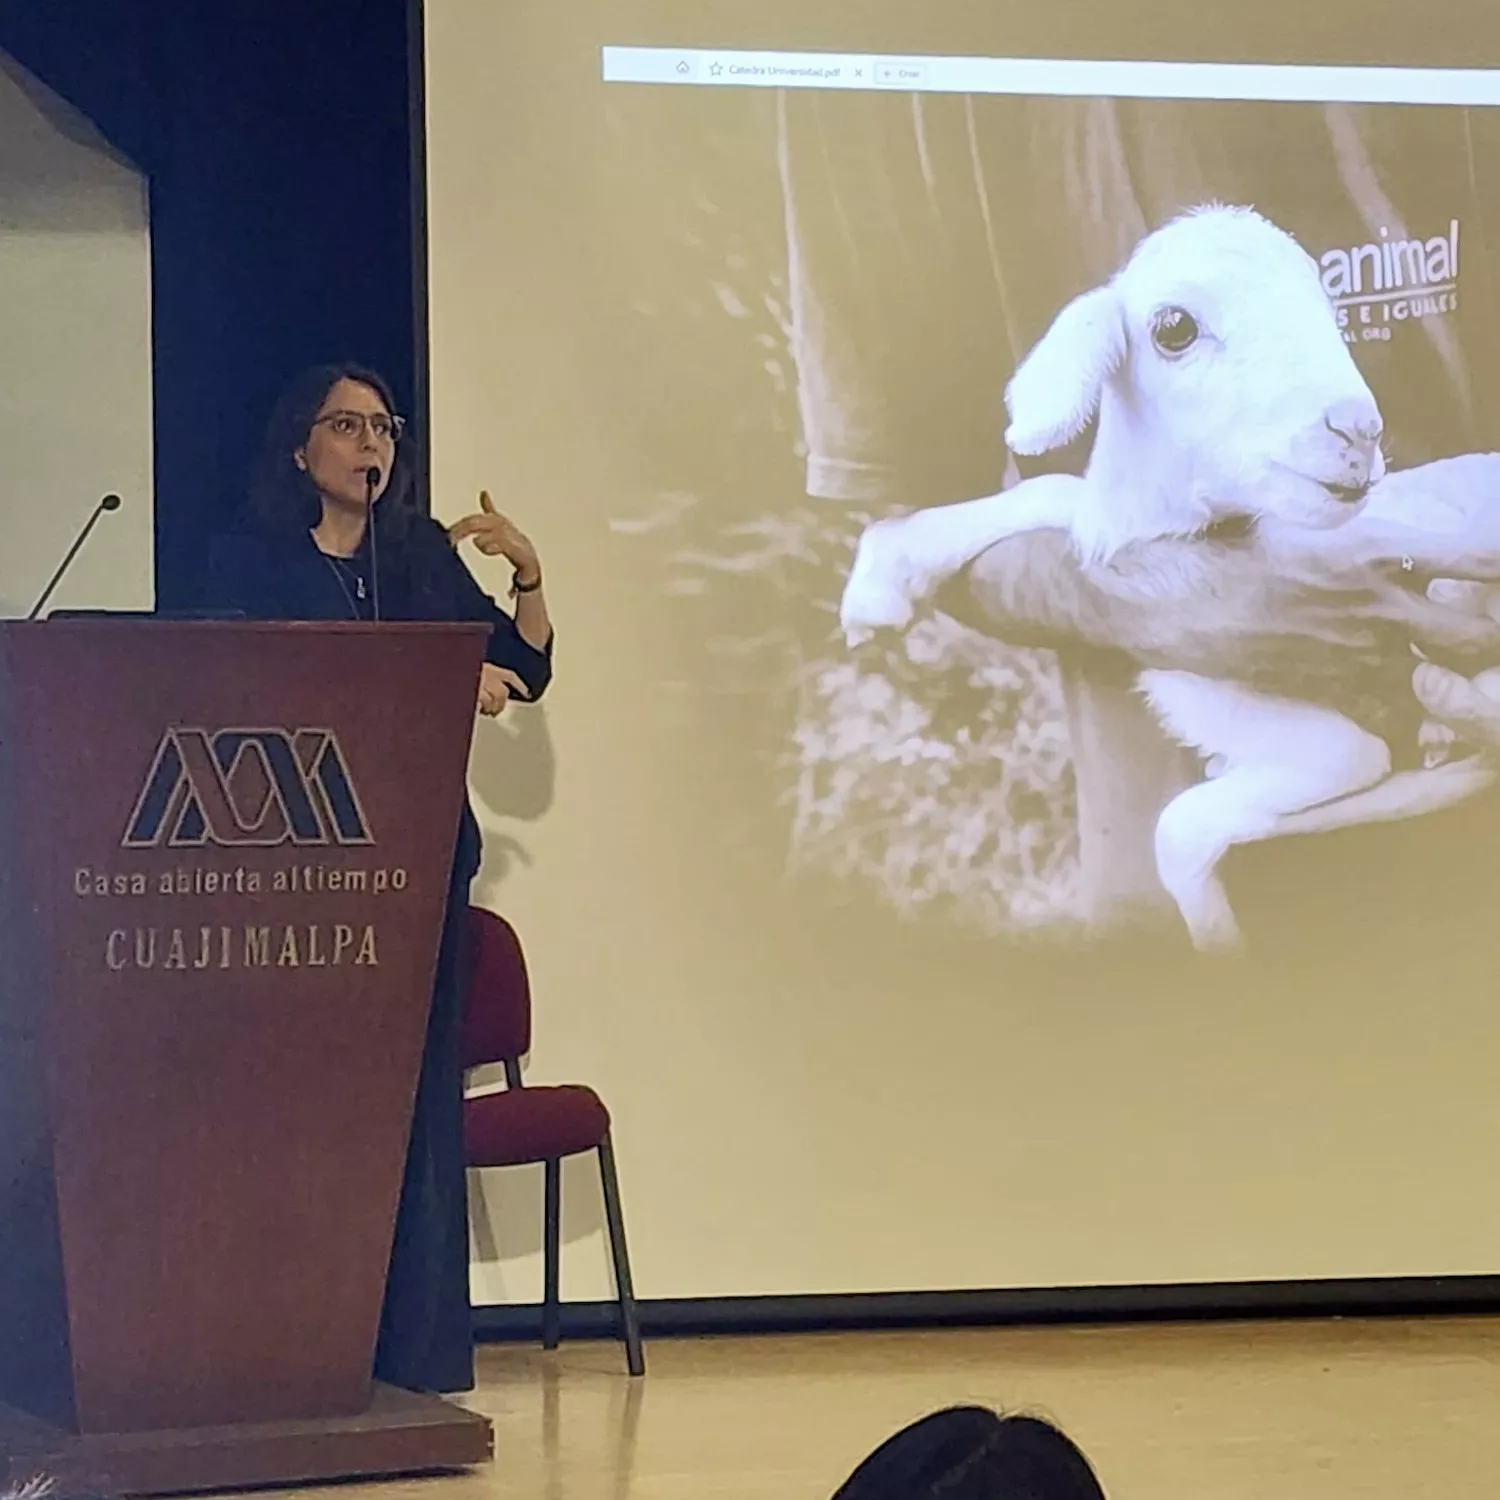 Igualdad Animal y la Universidad Autónoma Metropolitana se unen por los animales